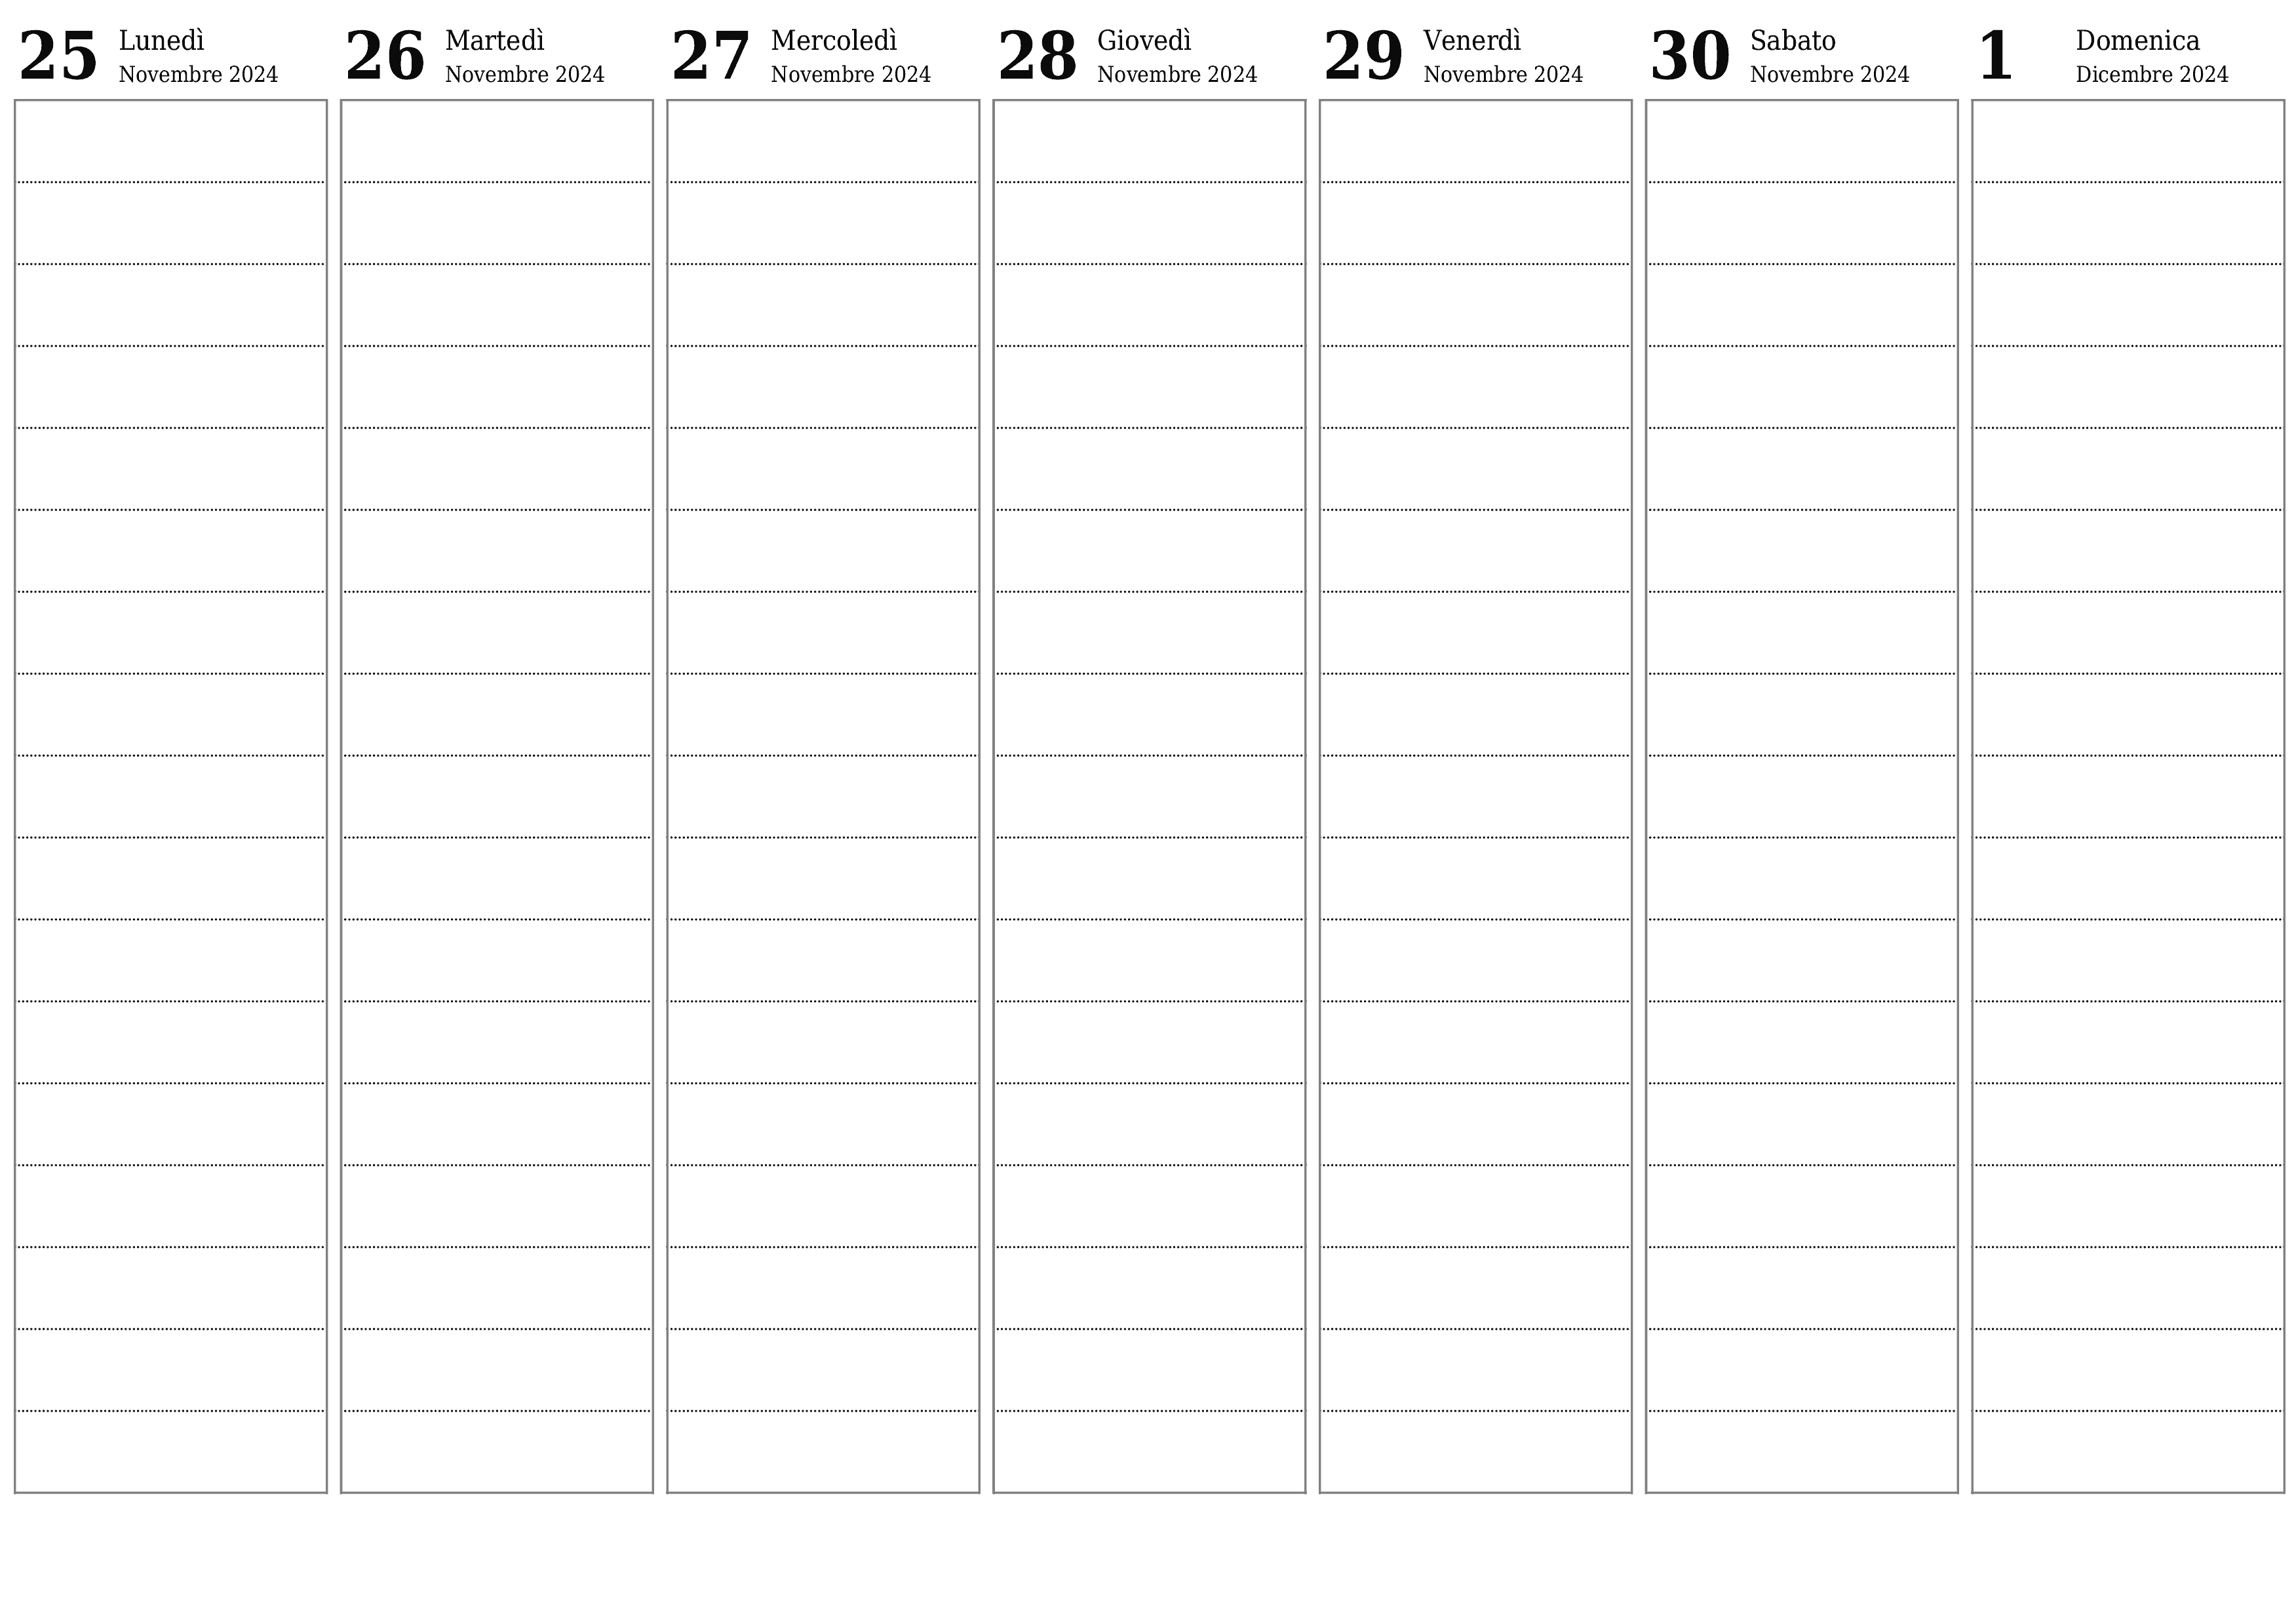  stampabile da parete modello di gratuitoorizzontale Settimanale pianificatore calendario Dicembre (Dic) 2024